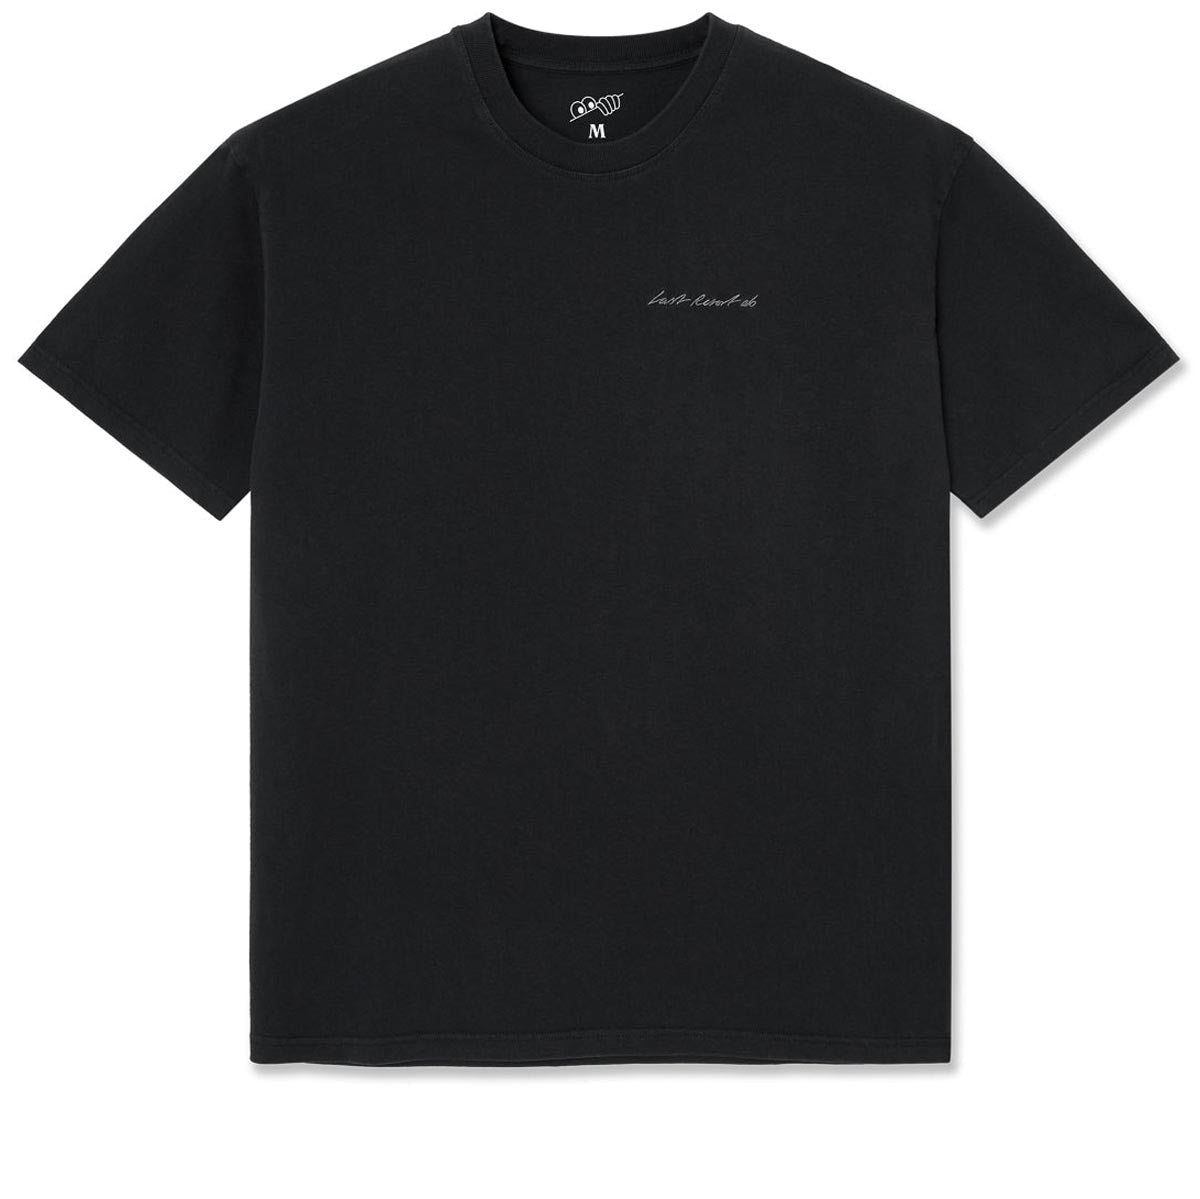 Last Resort AB Signature T-Shirt - Washed Black image 1